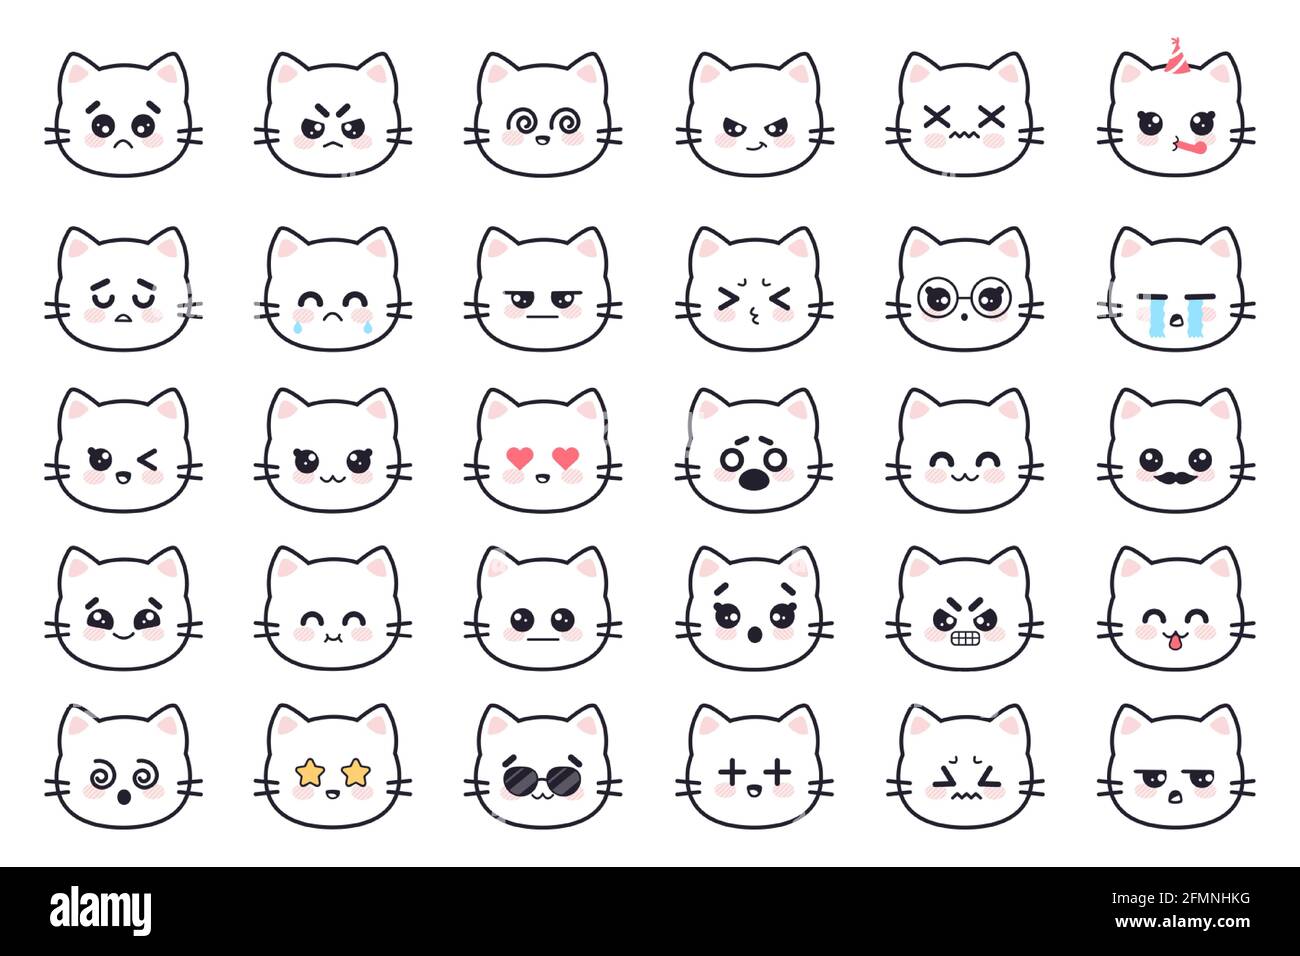 Gatos kawaii. Blanco gatito cabeza de anime avatares con varias emociones miedo, grito y ira, apatía y muerte, alegría y sorpresa manga vector conjunto. Personajes de animados con gafas de sol,